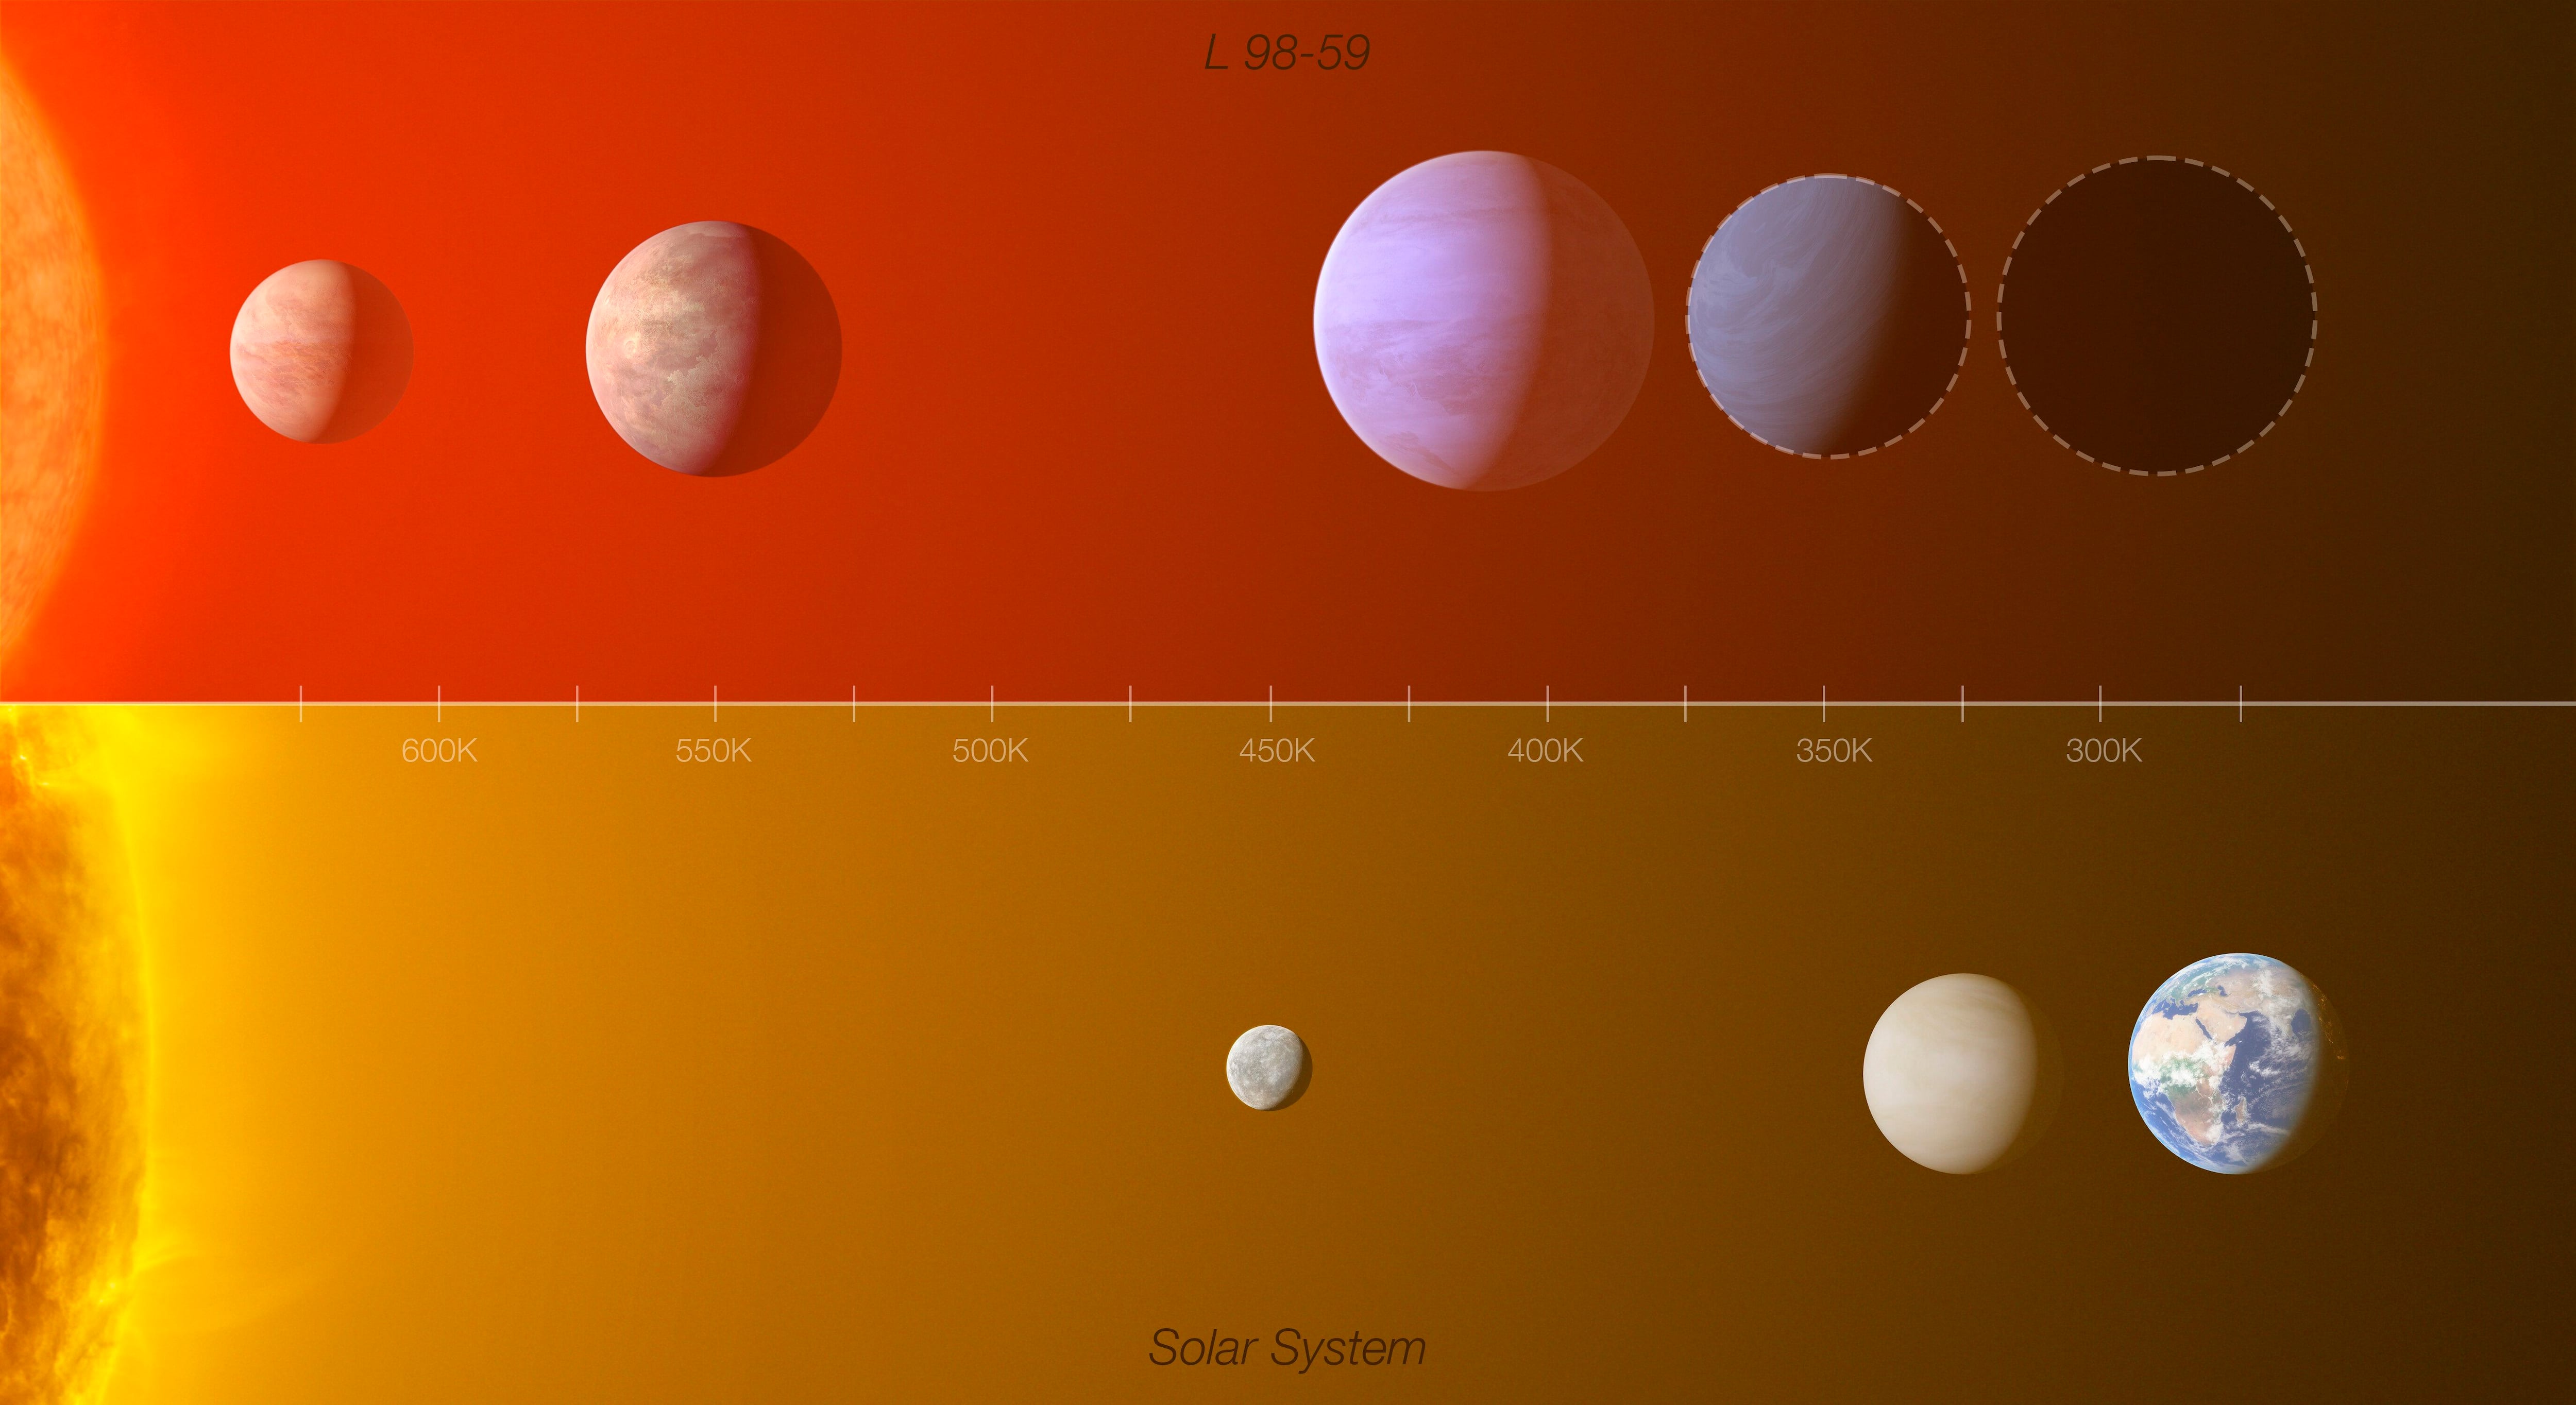 La imagen muestra una comparación entre el sistema de exoplanetas de la estrella L 98-59 (arriba) con una parte del Sistema Solar interior (Mercurio, Venus y la Tierra), y pone de relieve las similitudes que existen entre los dos sistemas. Imagen cedida por el Observatorio Austral Europeo (ESO). EFE

.

